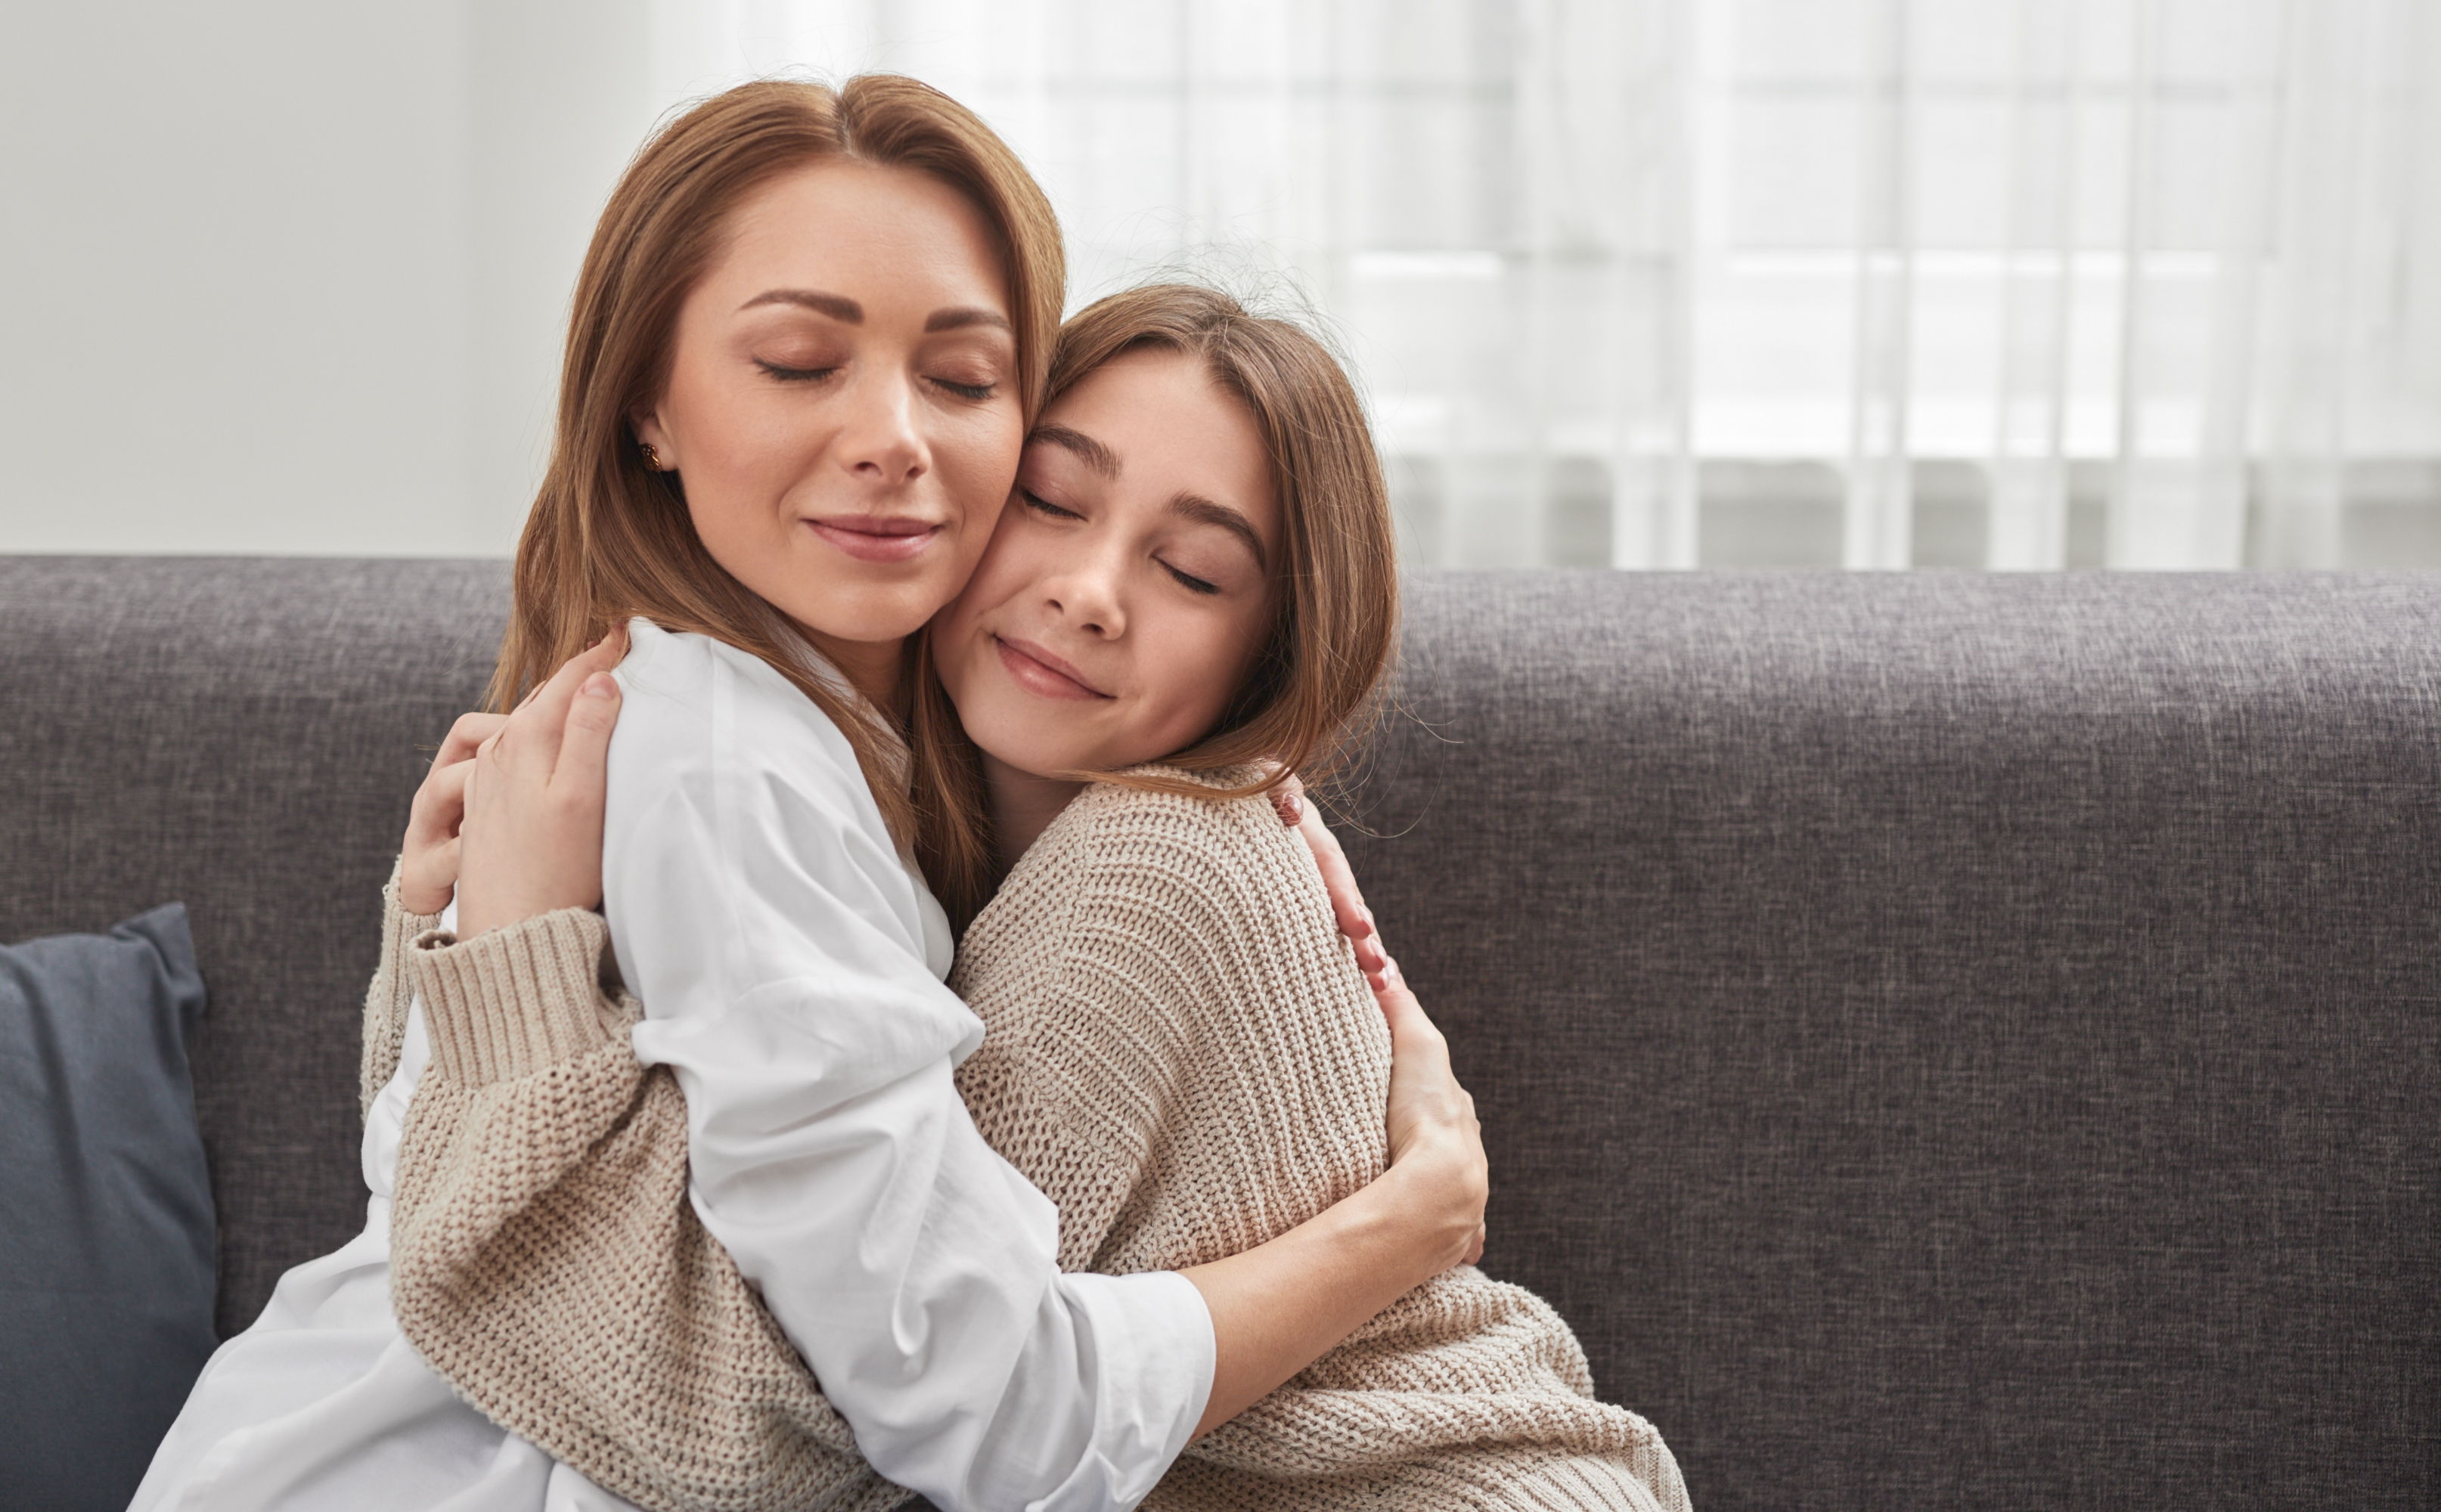 Mother hugging her teenage daughter | Source: Shutterstock